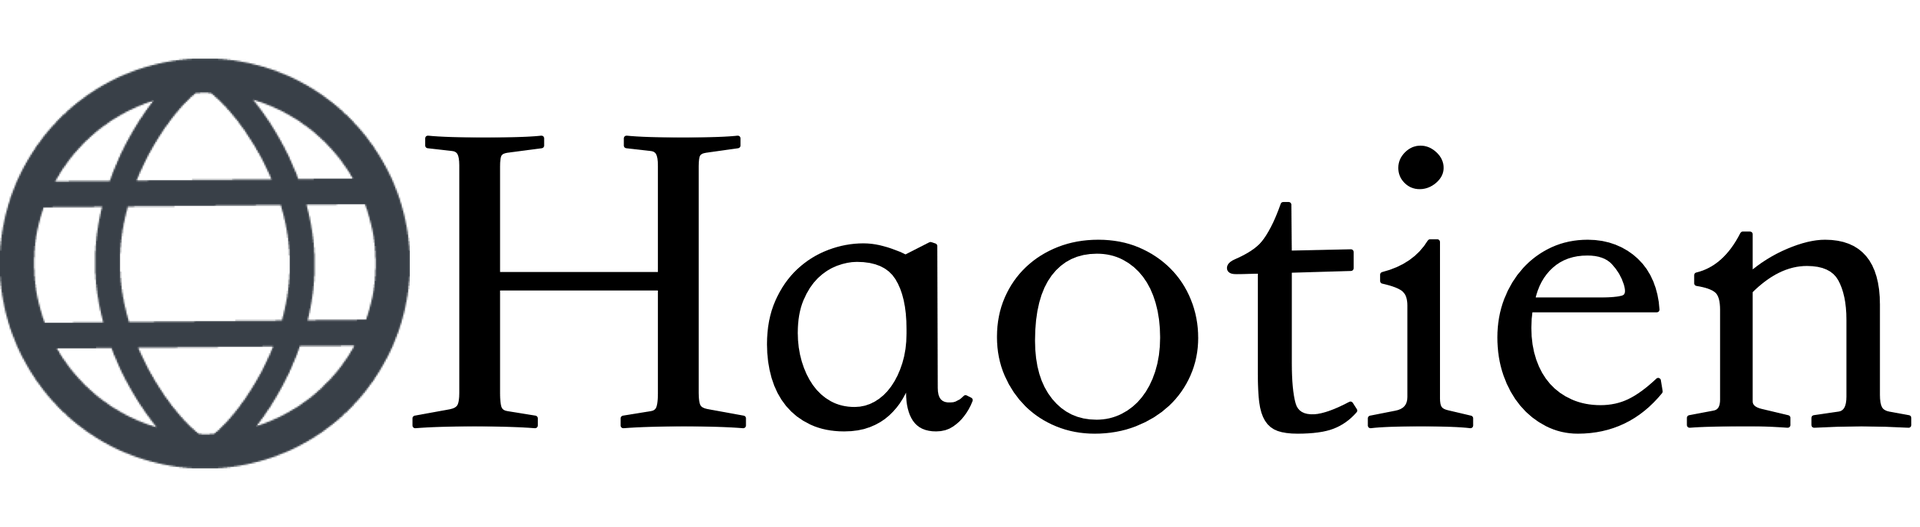 昊天科技有限公司Logo